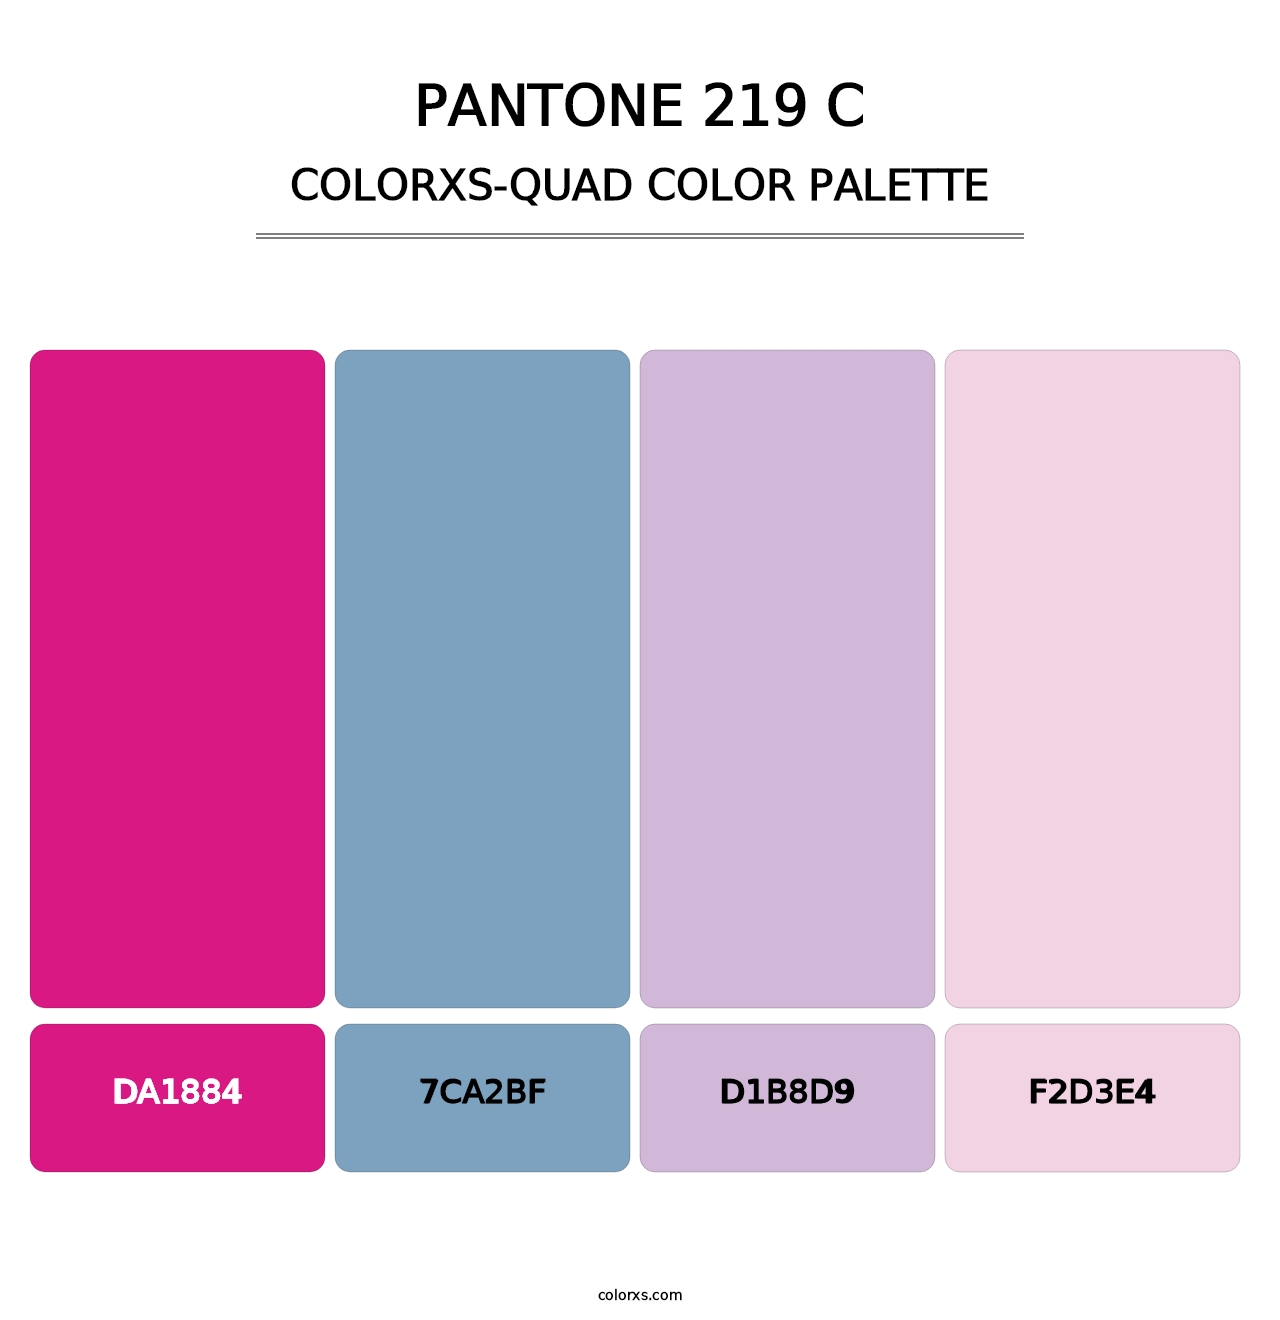 PANTONE 219 C - Colorxs Quad Palette